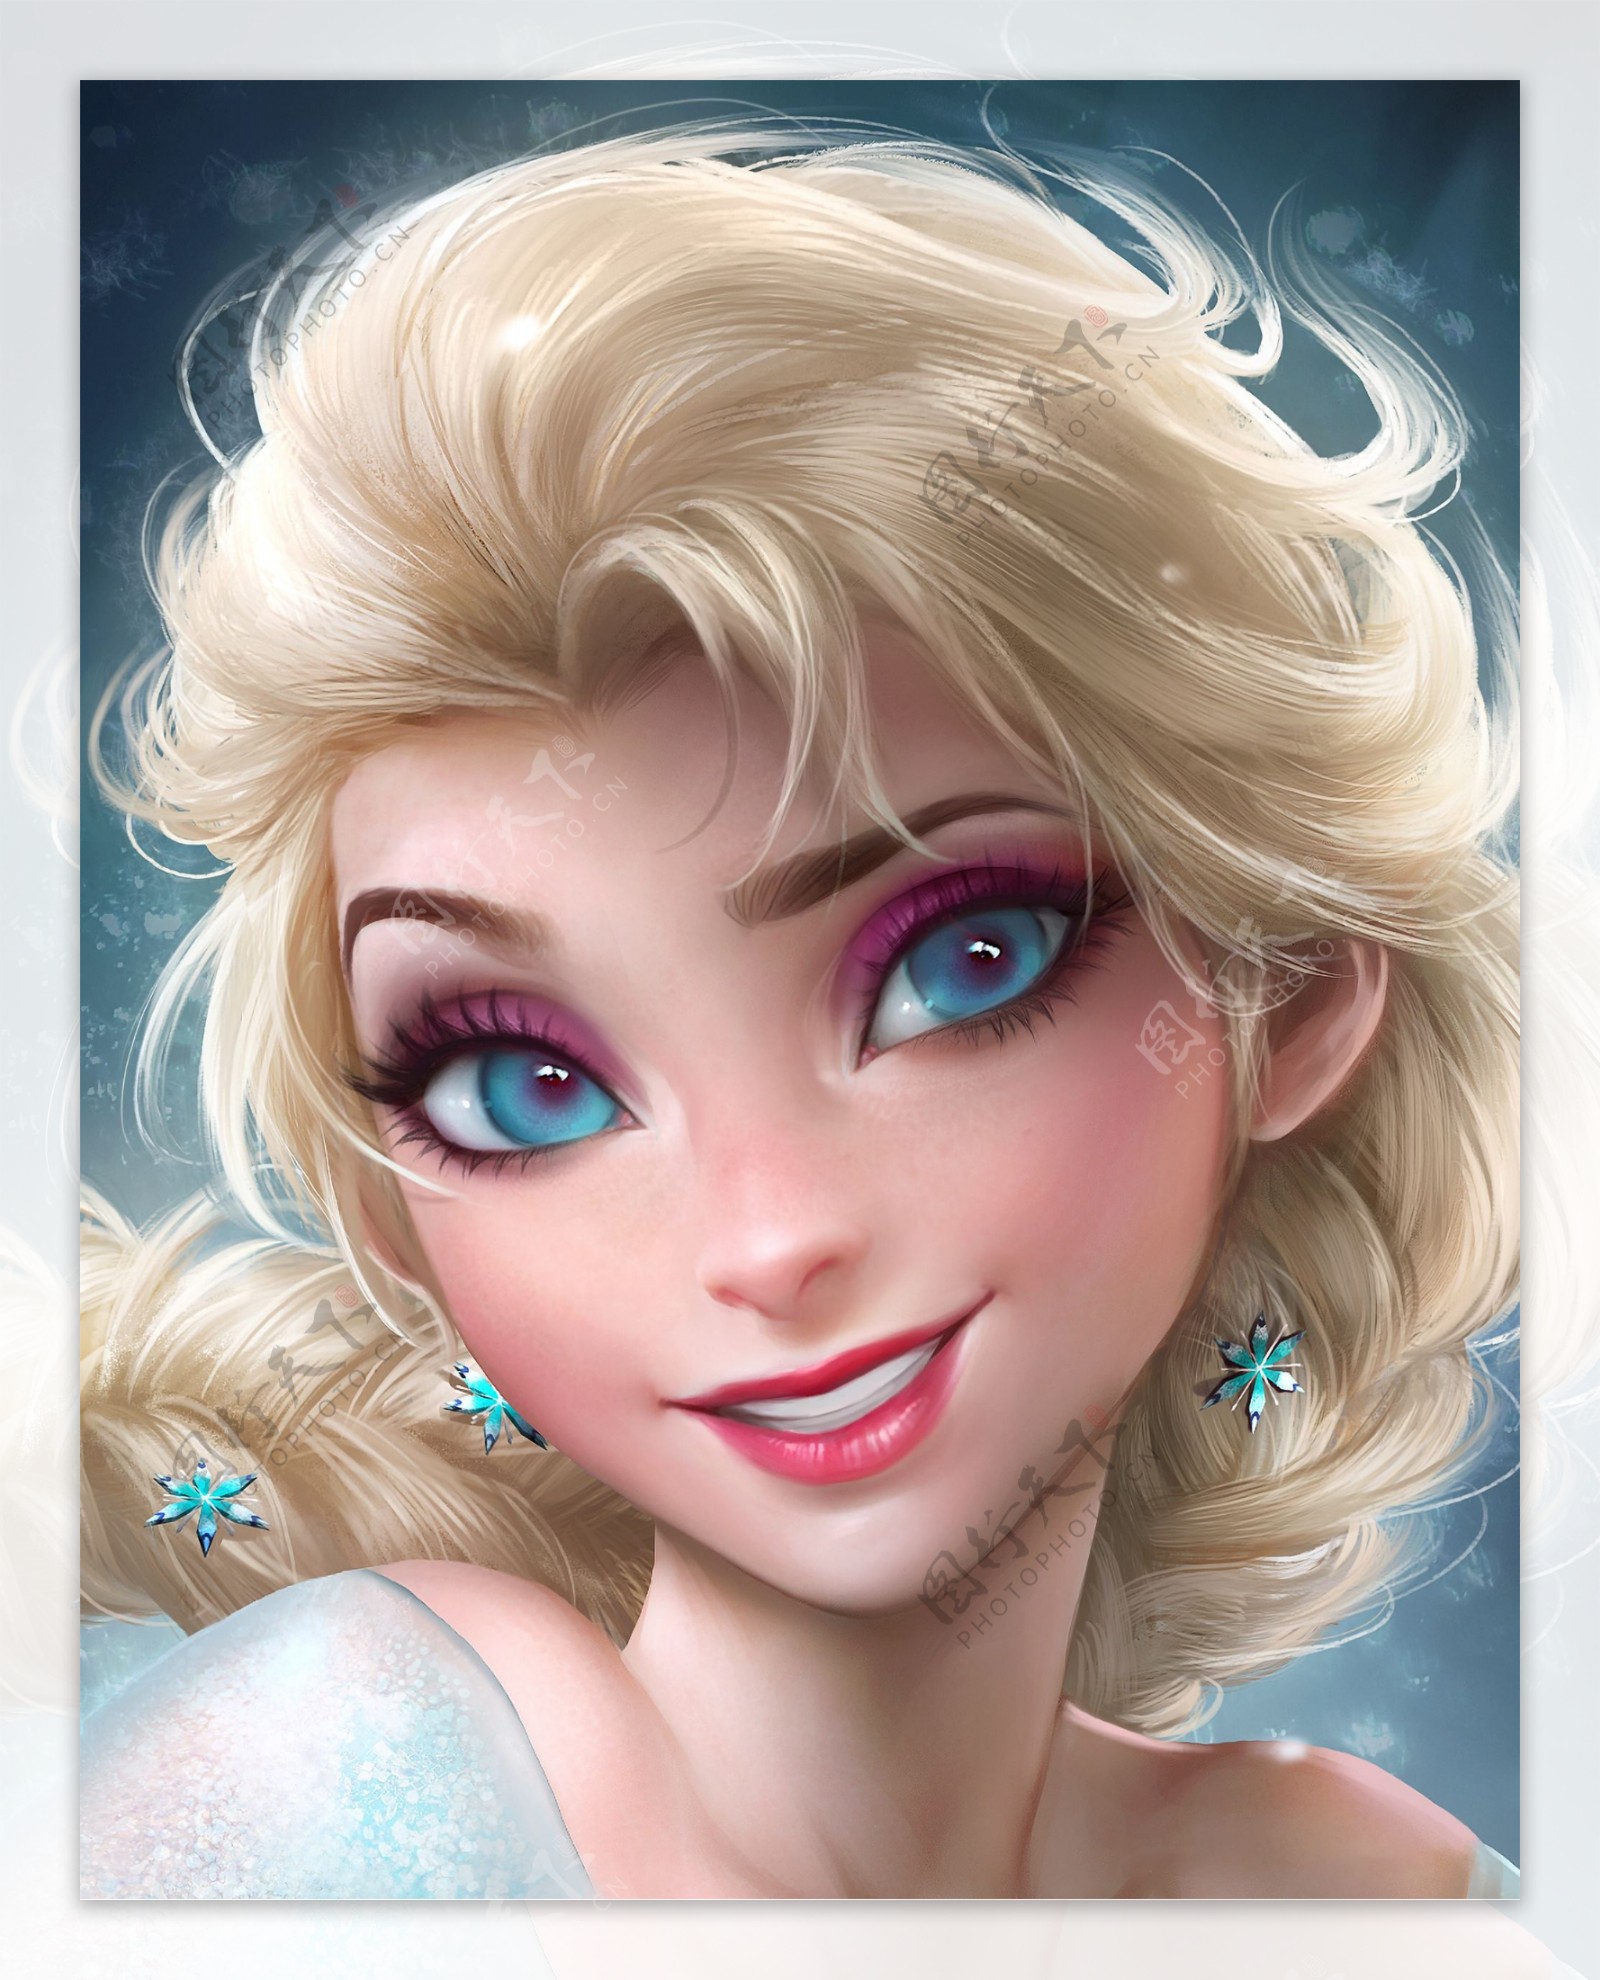 自画临冰雪奇缘女主角Elsa